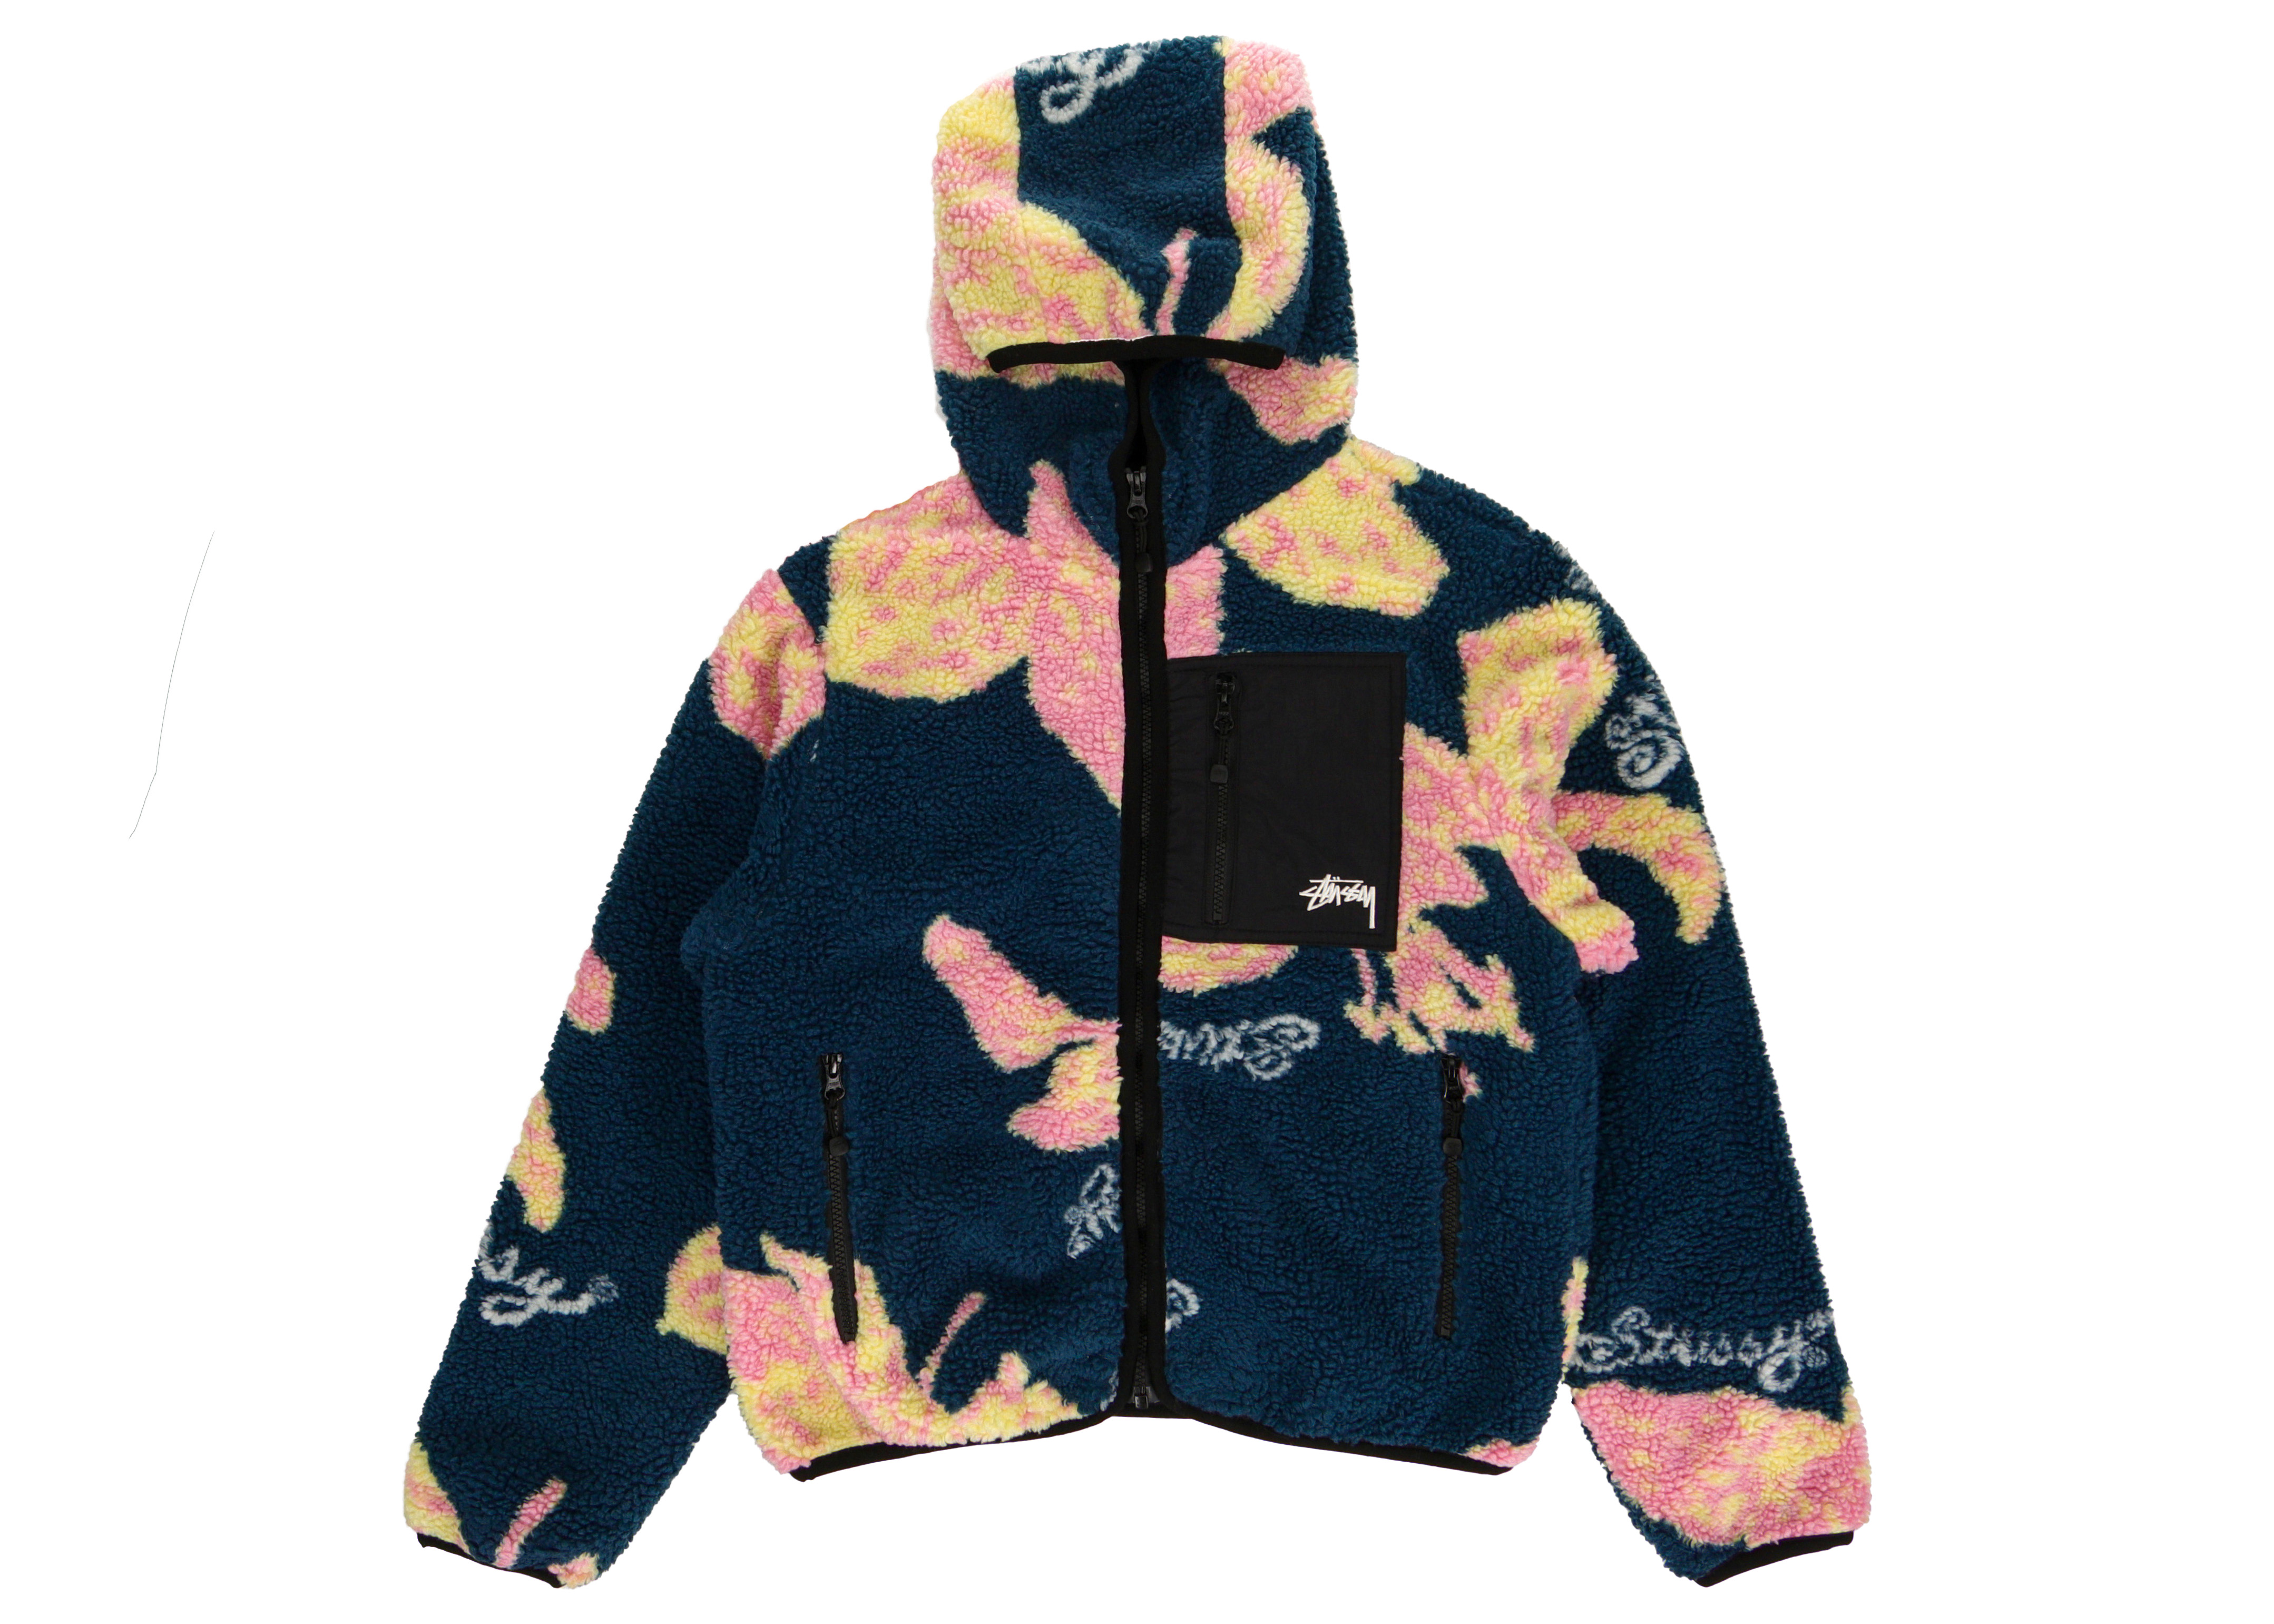 floral-print fleece reversible jacket, Stüssy